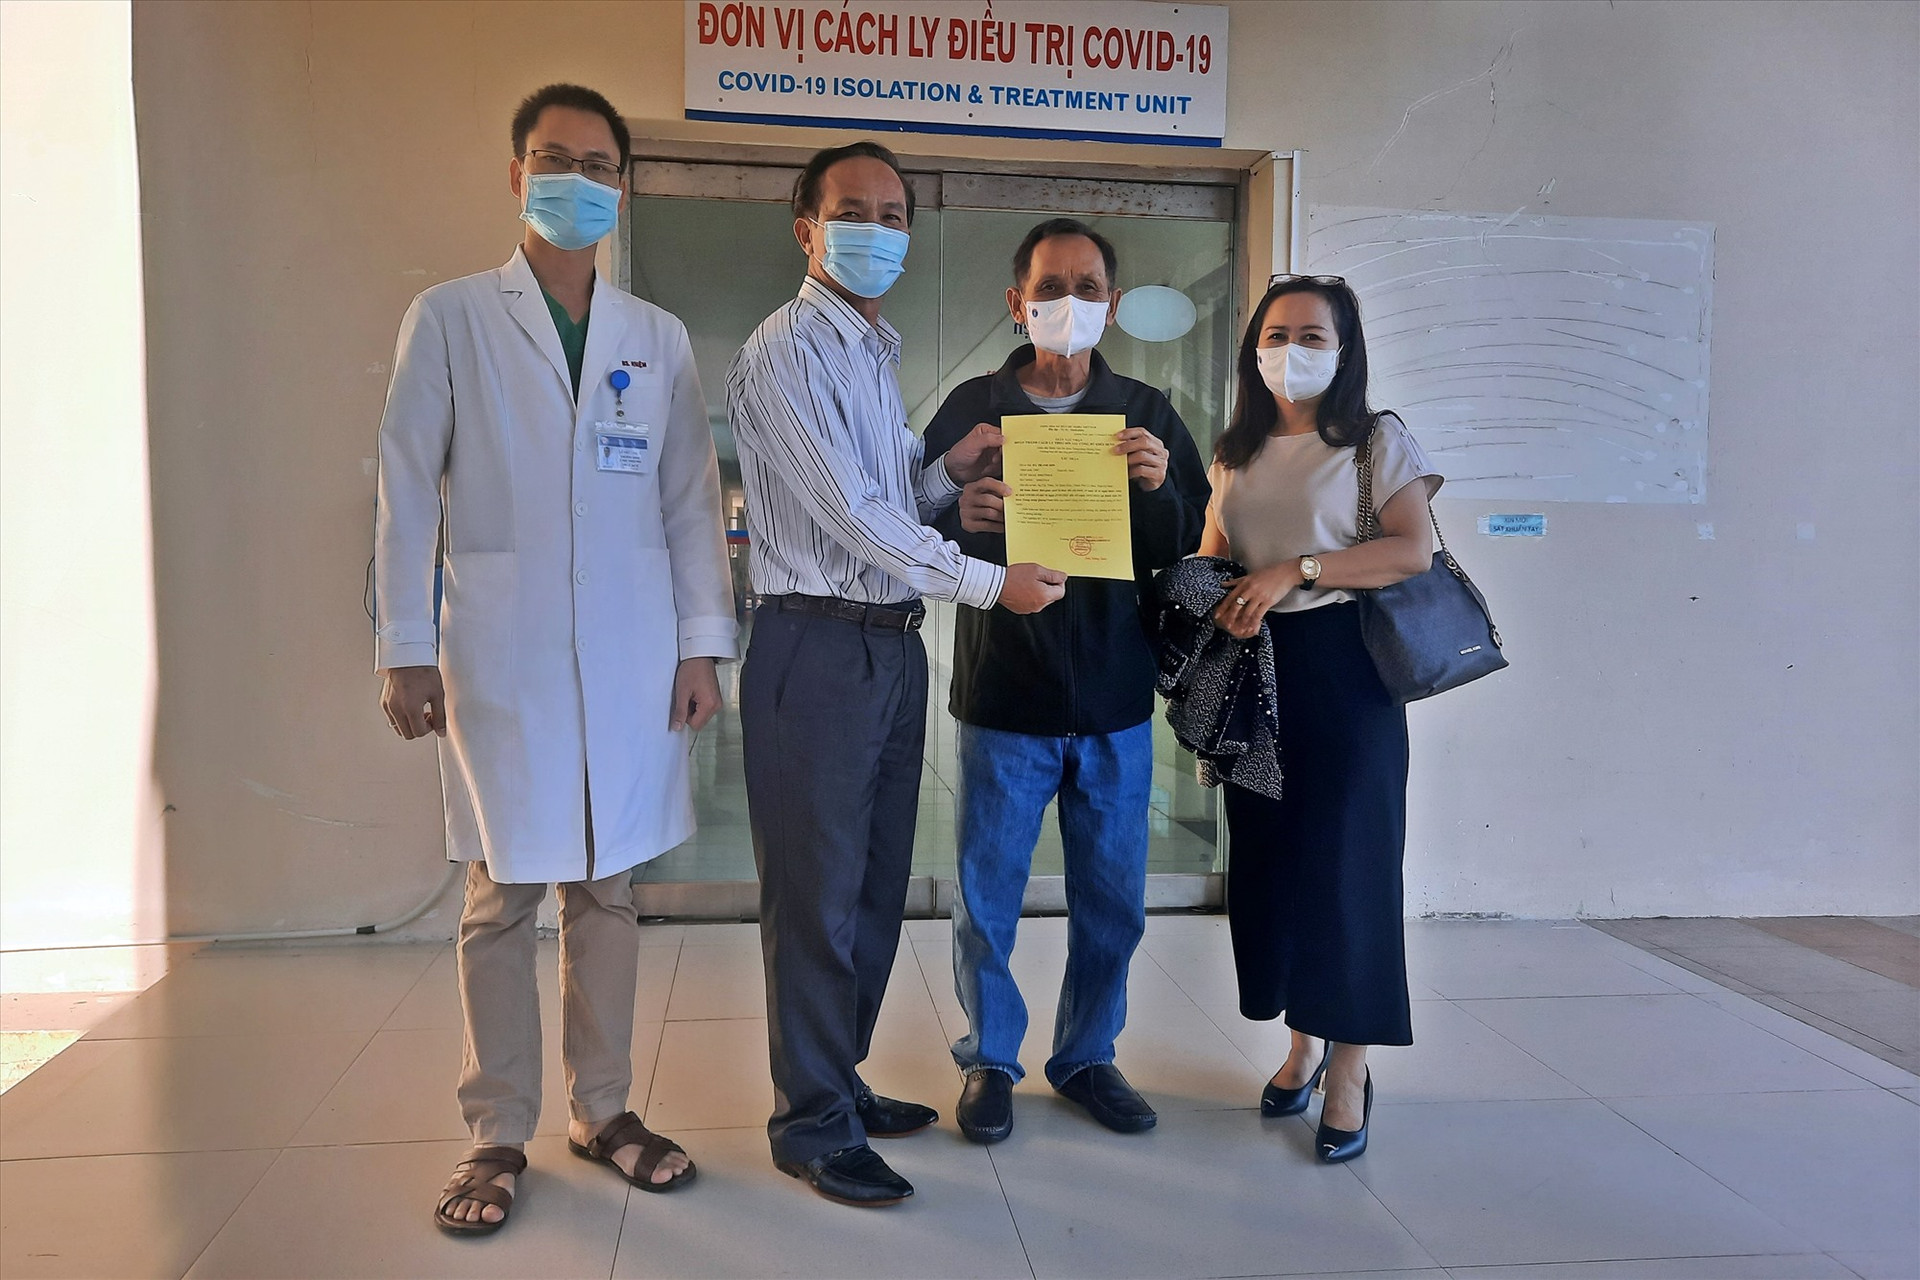 Trao giấy chứng nhận hoàn thành điều trị SARS-CoV-2 cho ông H.T.S. Ảnh: Đ.Q